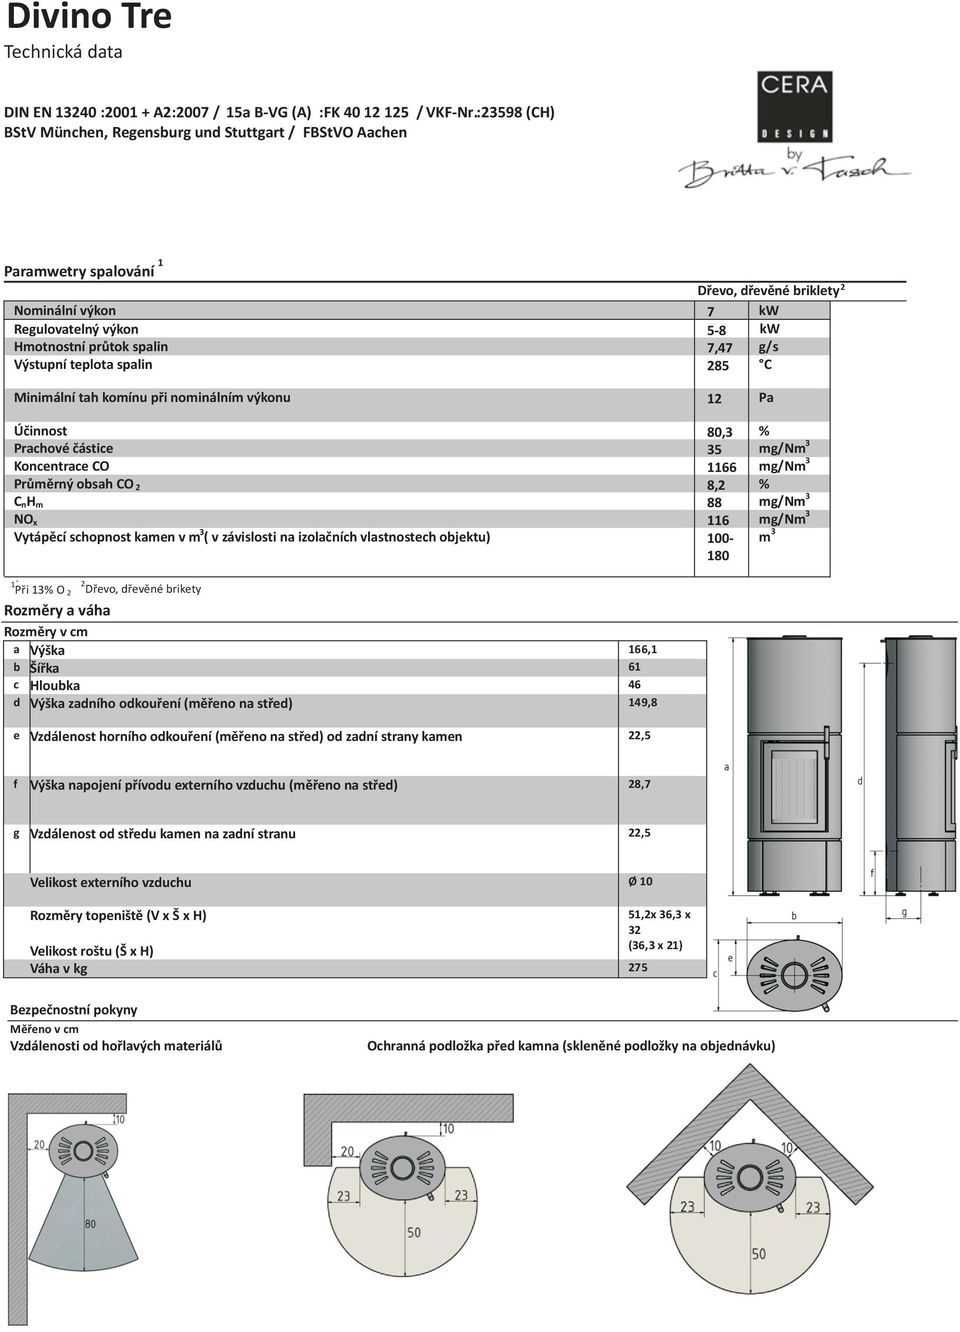 Výstupní teplota spalin 285 C Minimální tah komínu při nominálním výkonu 12 Pa Účinnost 80,3 % Prachové částice 35 mg/nm 3 Koncentrace CO 1166 mg/nm 3 Průměrný obsah CO 2 8,2 % C nh m 88 mg/nm 3 NO x